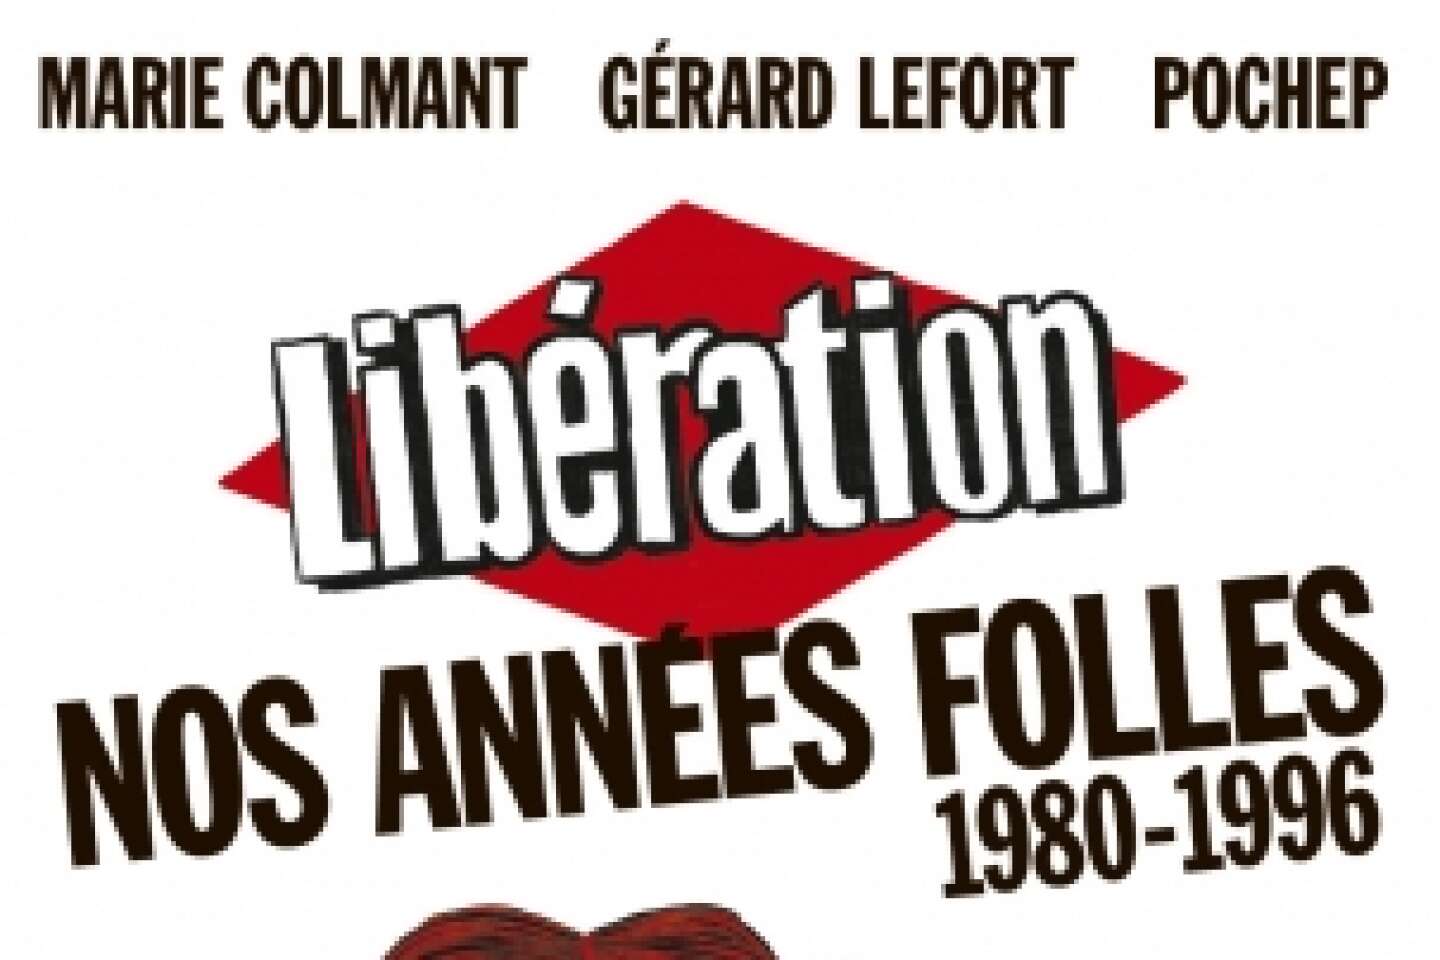 « Libération. Nos années folles, 1980-1996 » : une autre époque, sacrément délurée